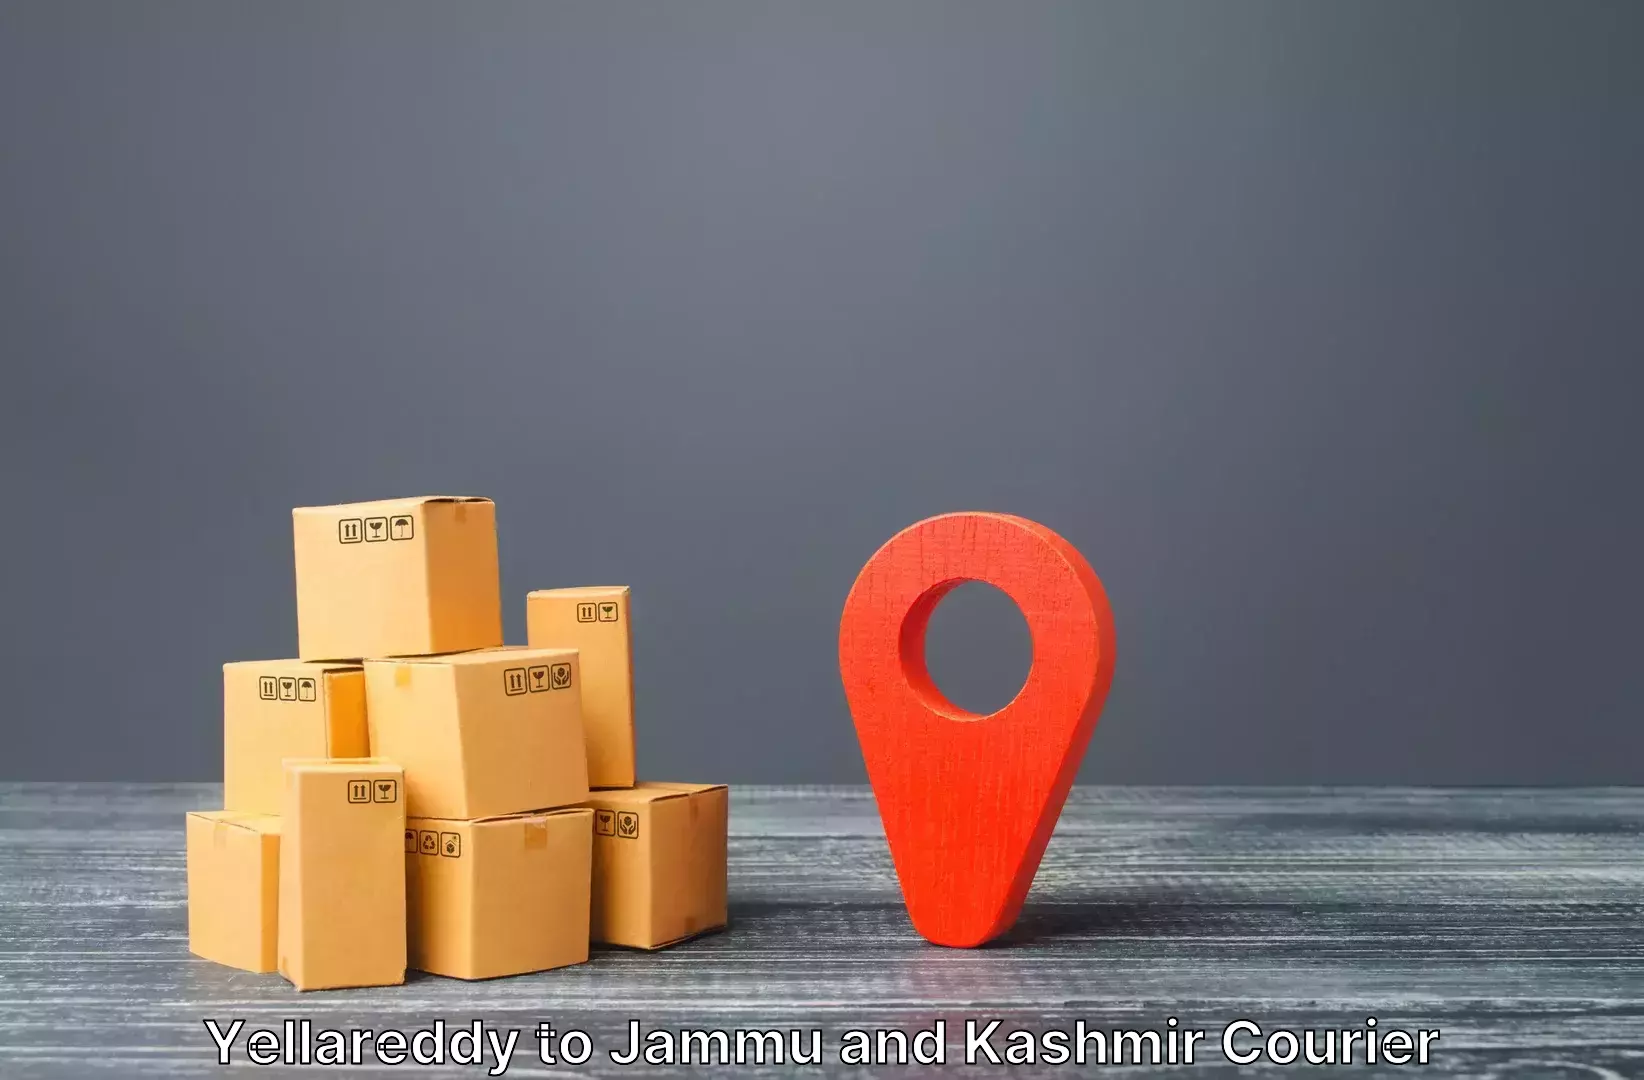 Luggage shipping discounts Yellareddy to Srinagar Kashmir